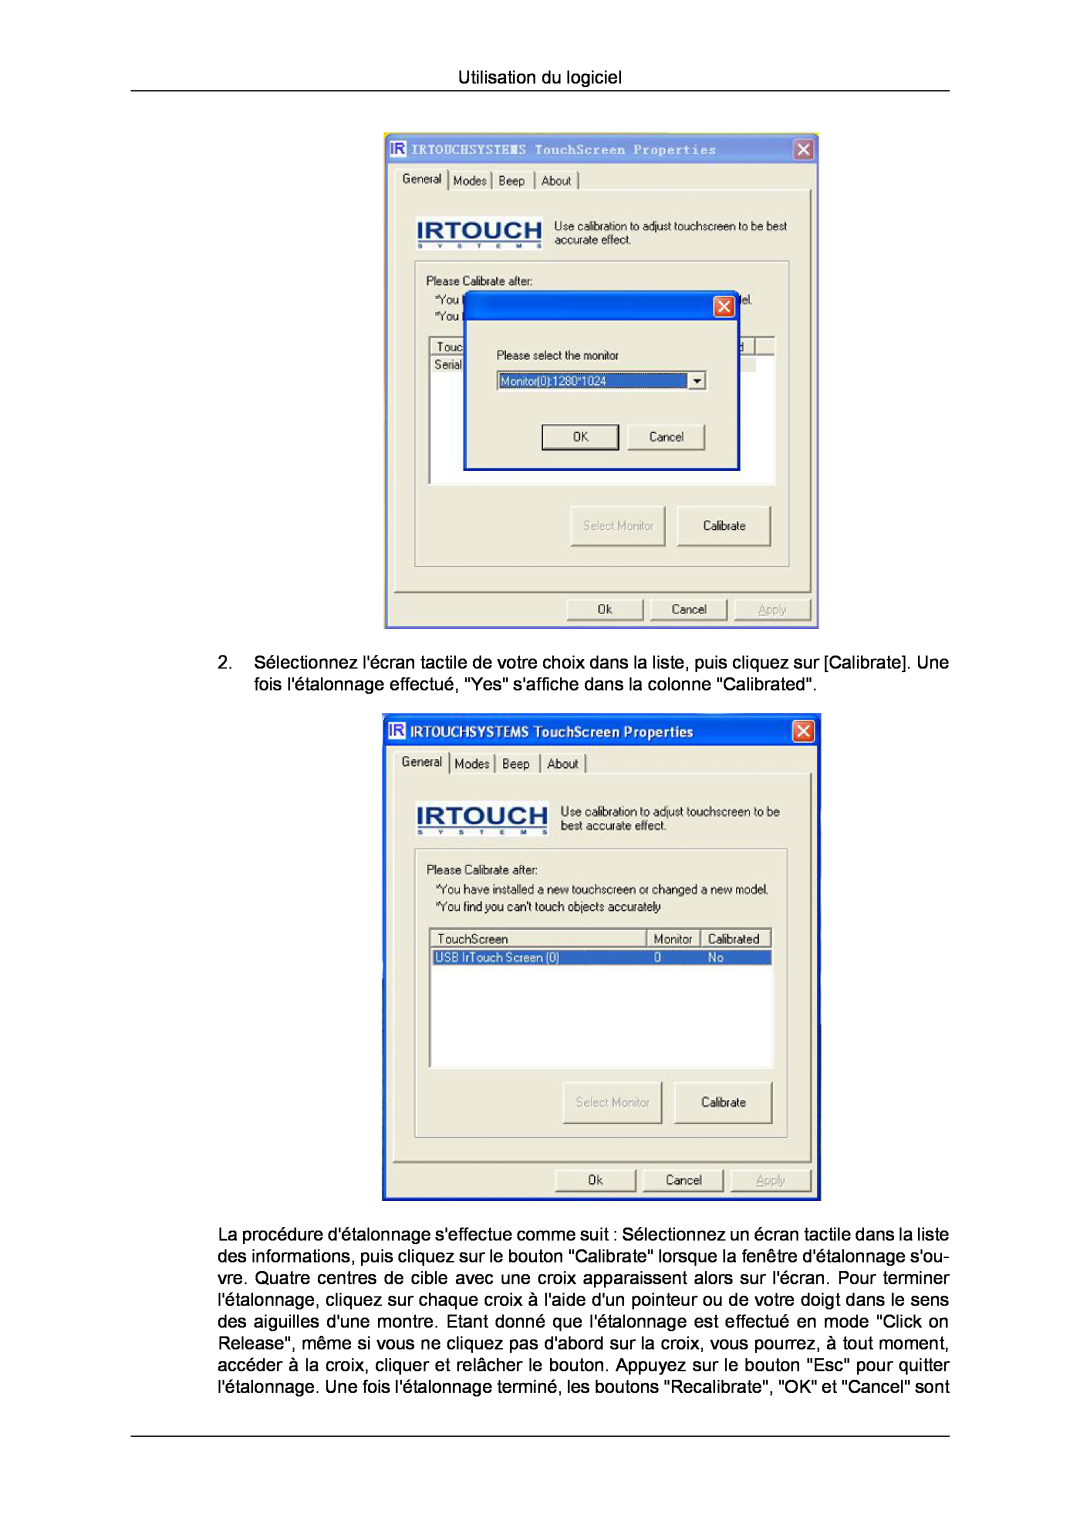 Samsung LH82TCUMBG/EN, LH70TCUMBG/EN, LH70TCSMBG/EN manual Utilisation du logiciel 